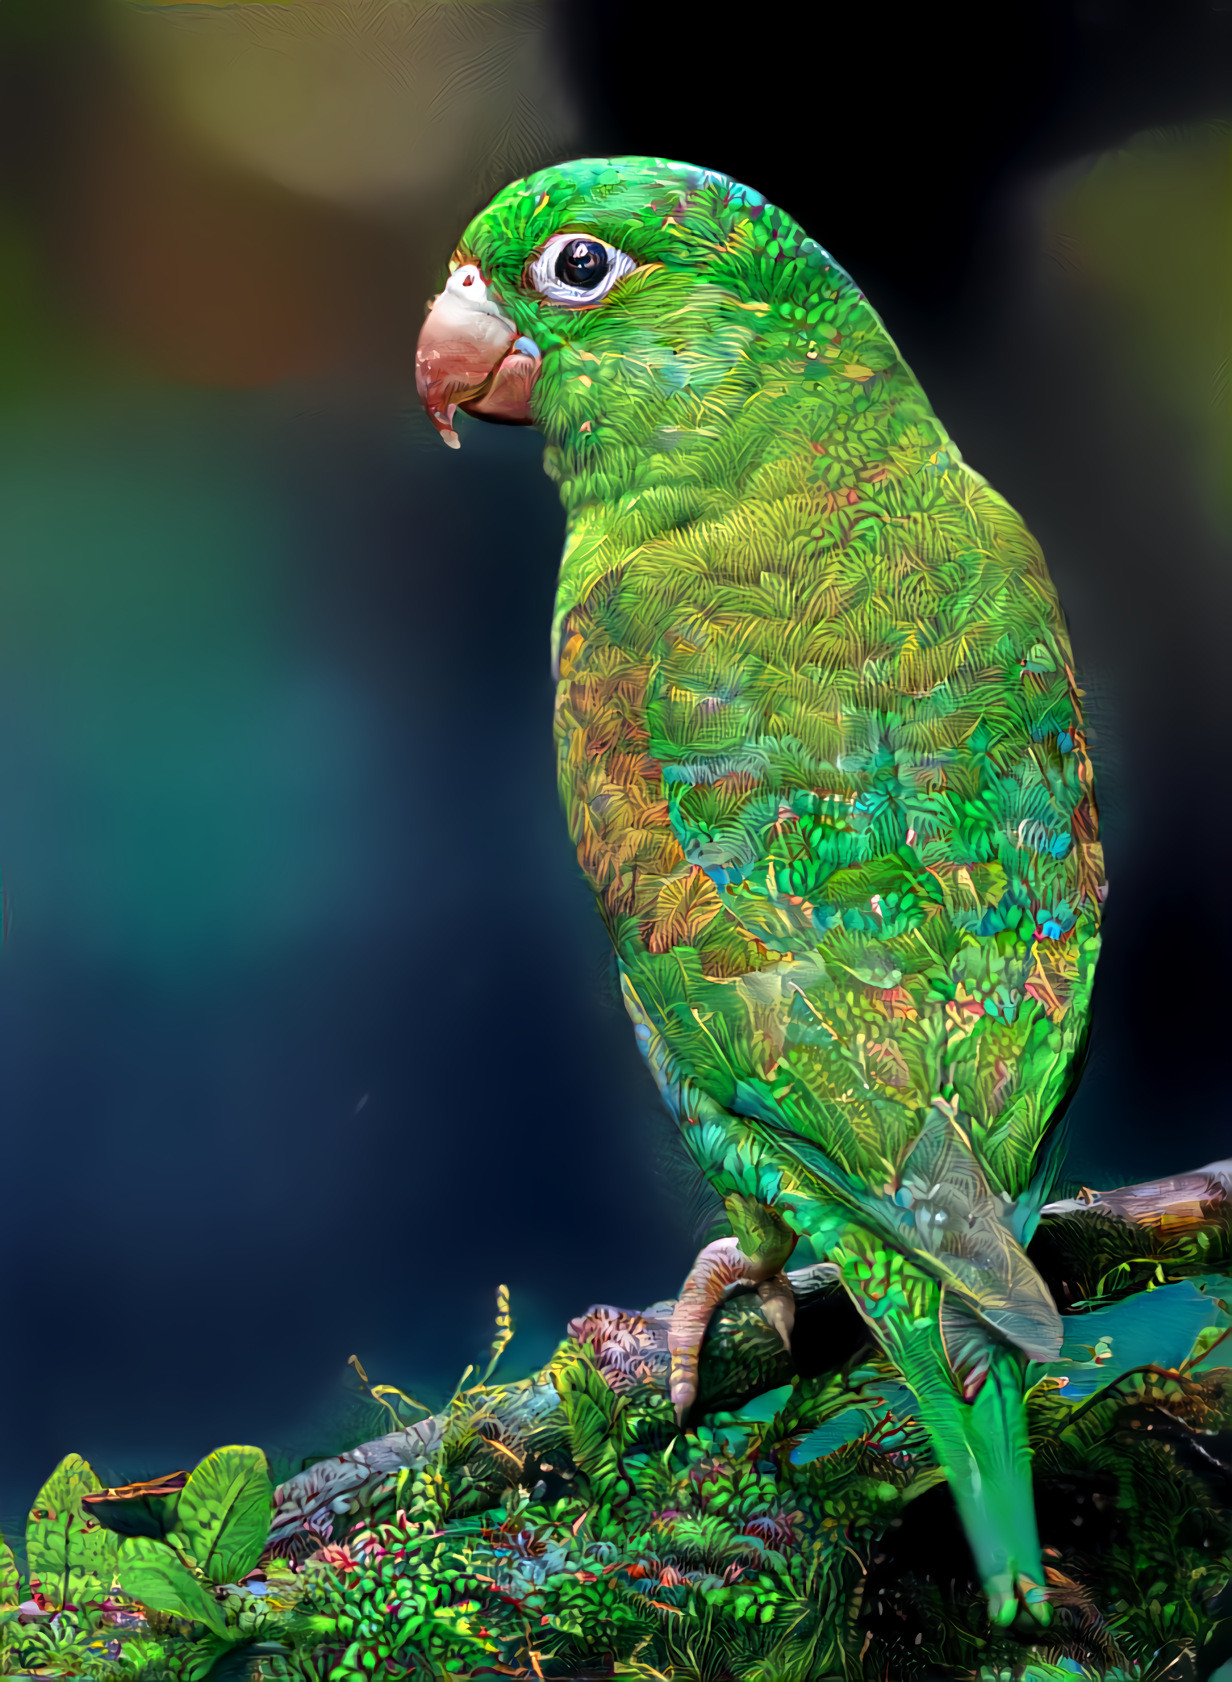 Orange-chinned Parakeet, Costa Rica V2 (higher resolution). Source photo by Zdeněk Macháček on Unsplash. Style by Deep Dreamer Remi.